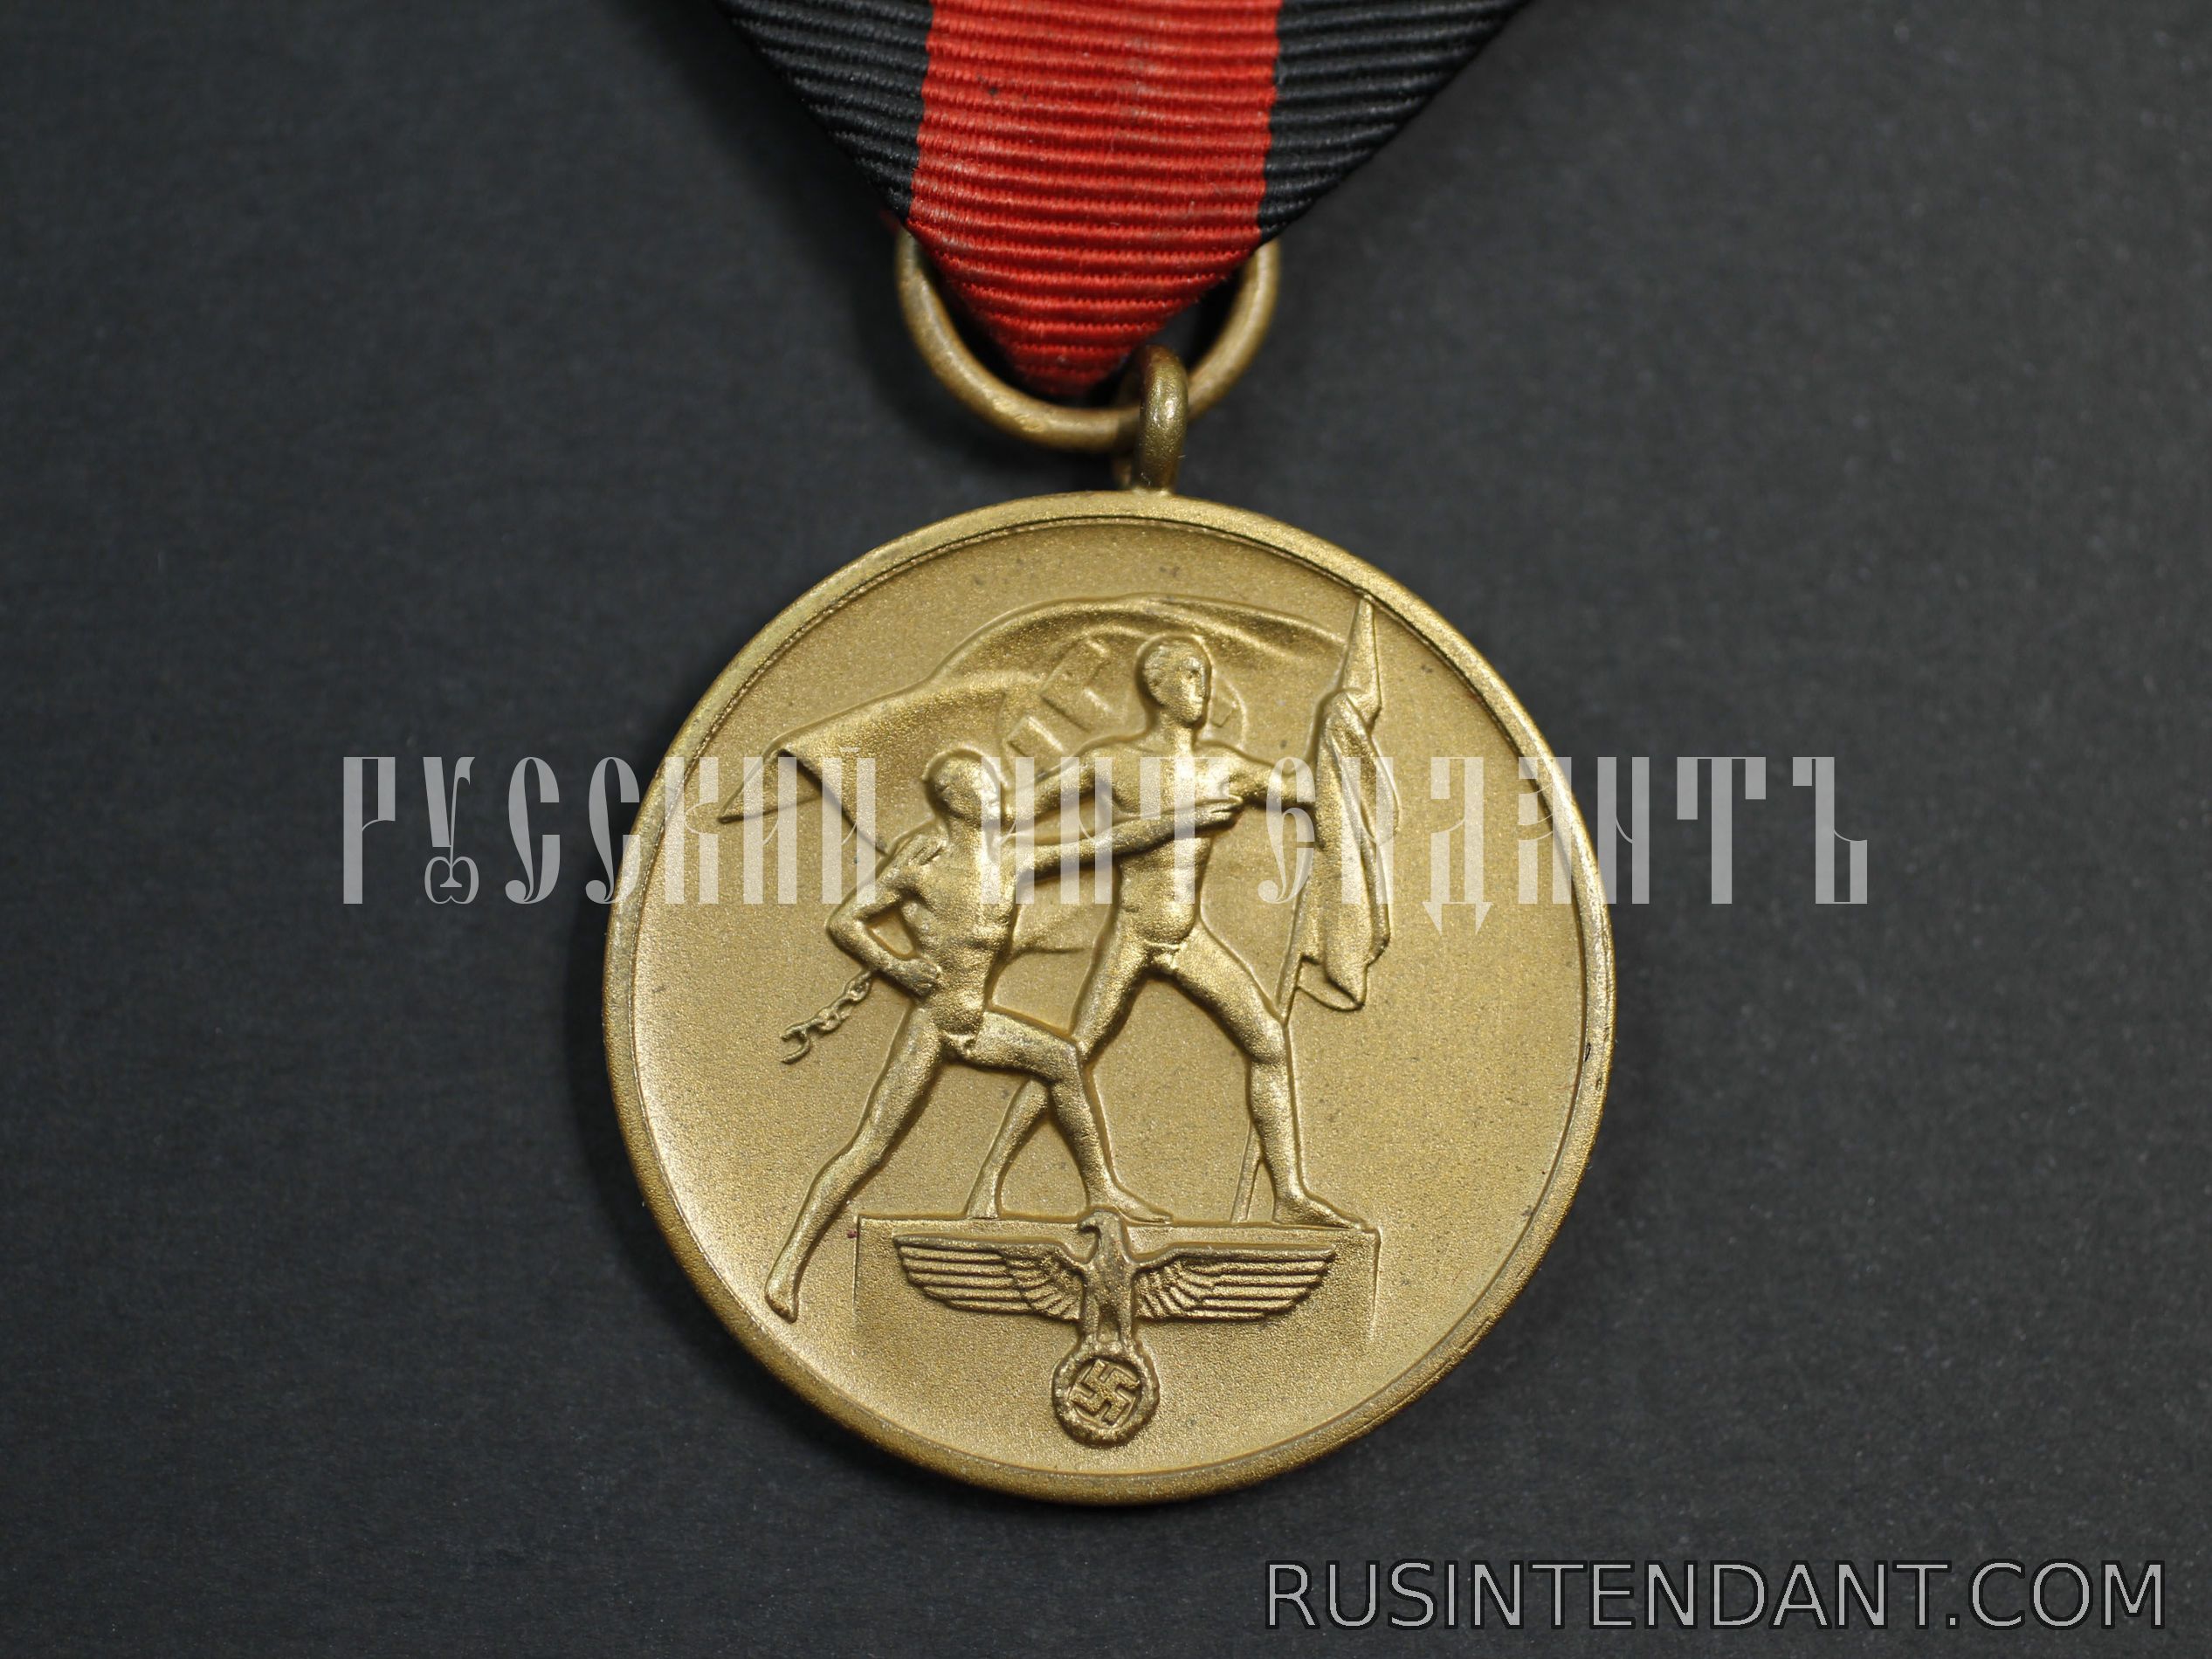 Фото 4: Медаль "В память 1 октября 1938 года" со шпангой 